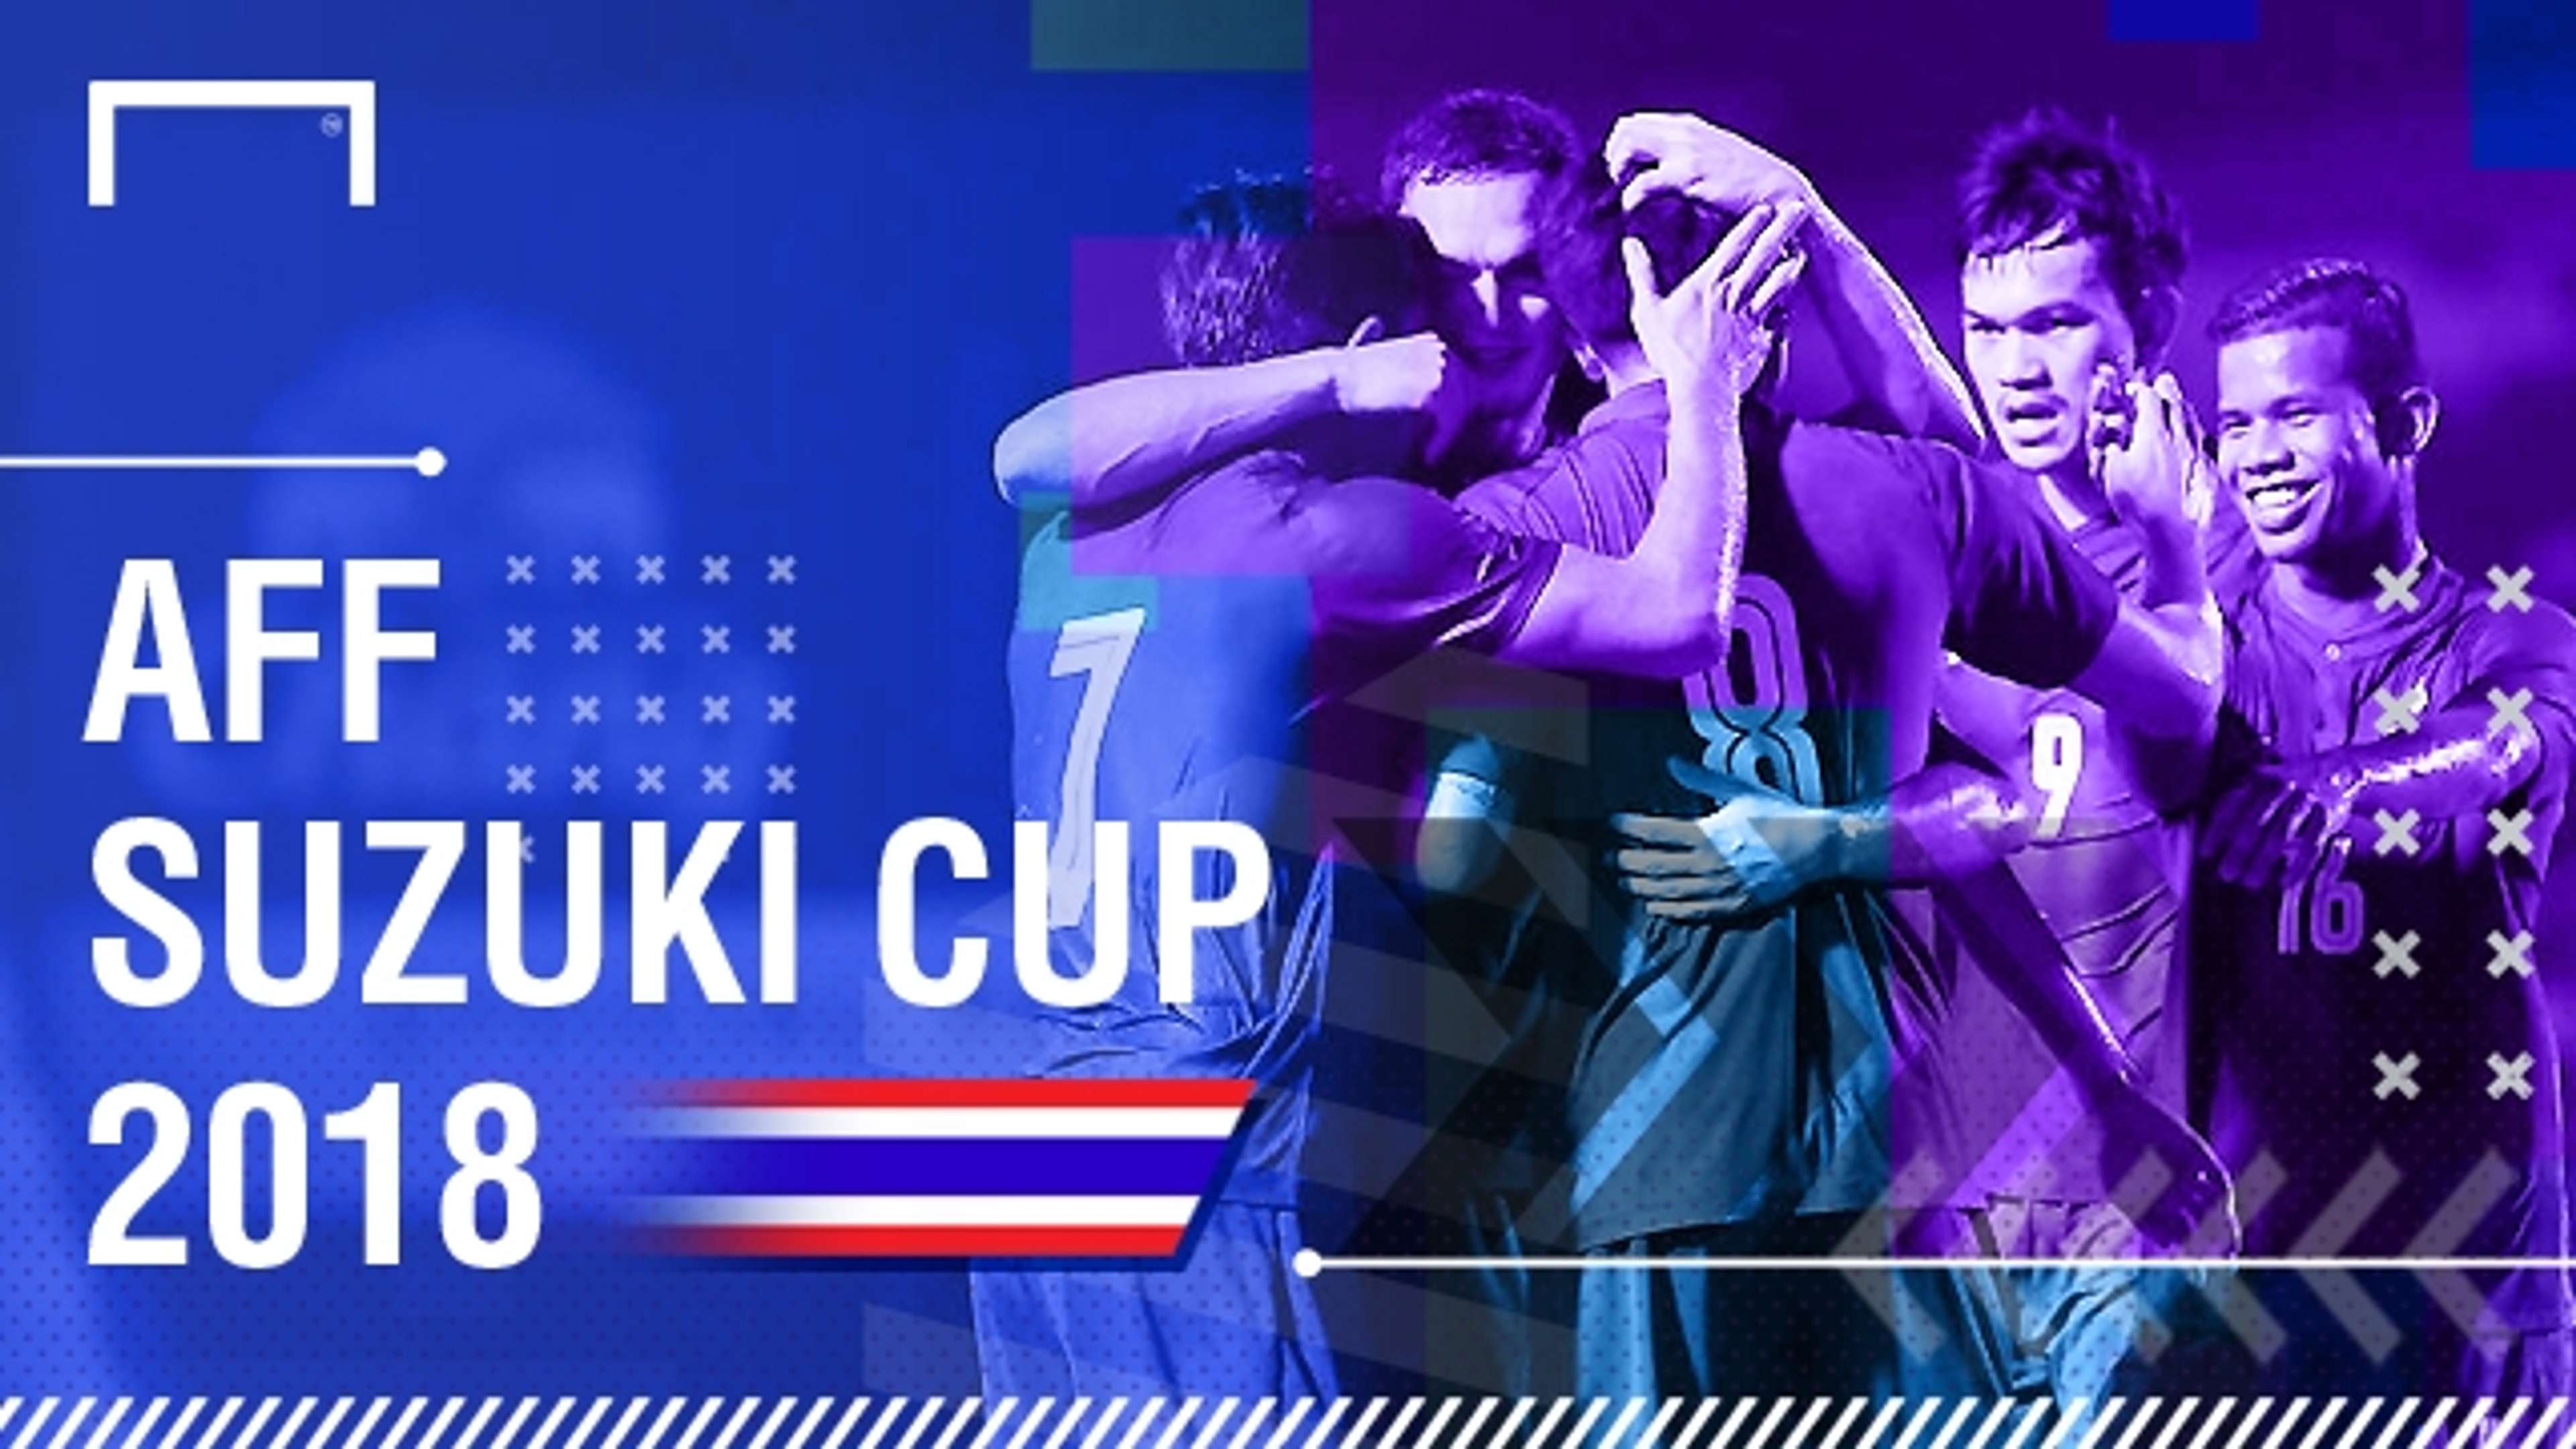 AFF Suzuki Cup 2018 TH footer banner